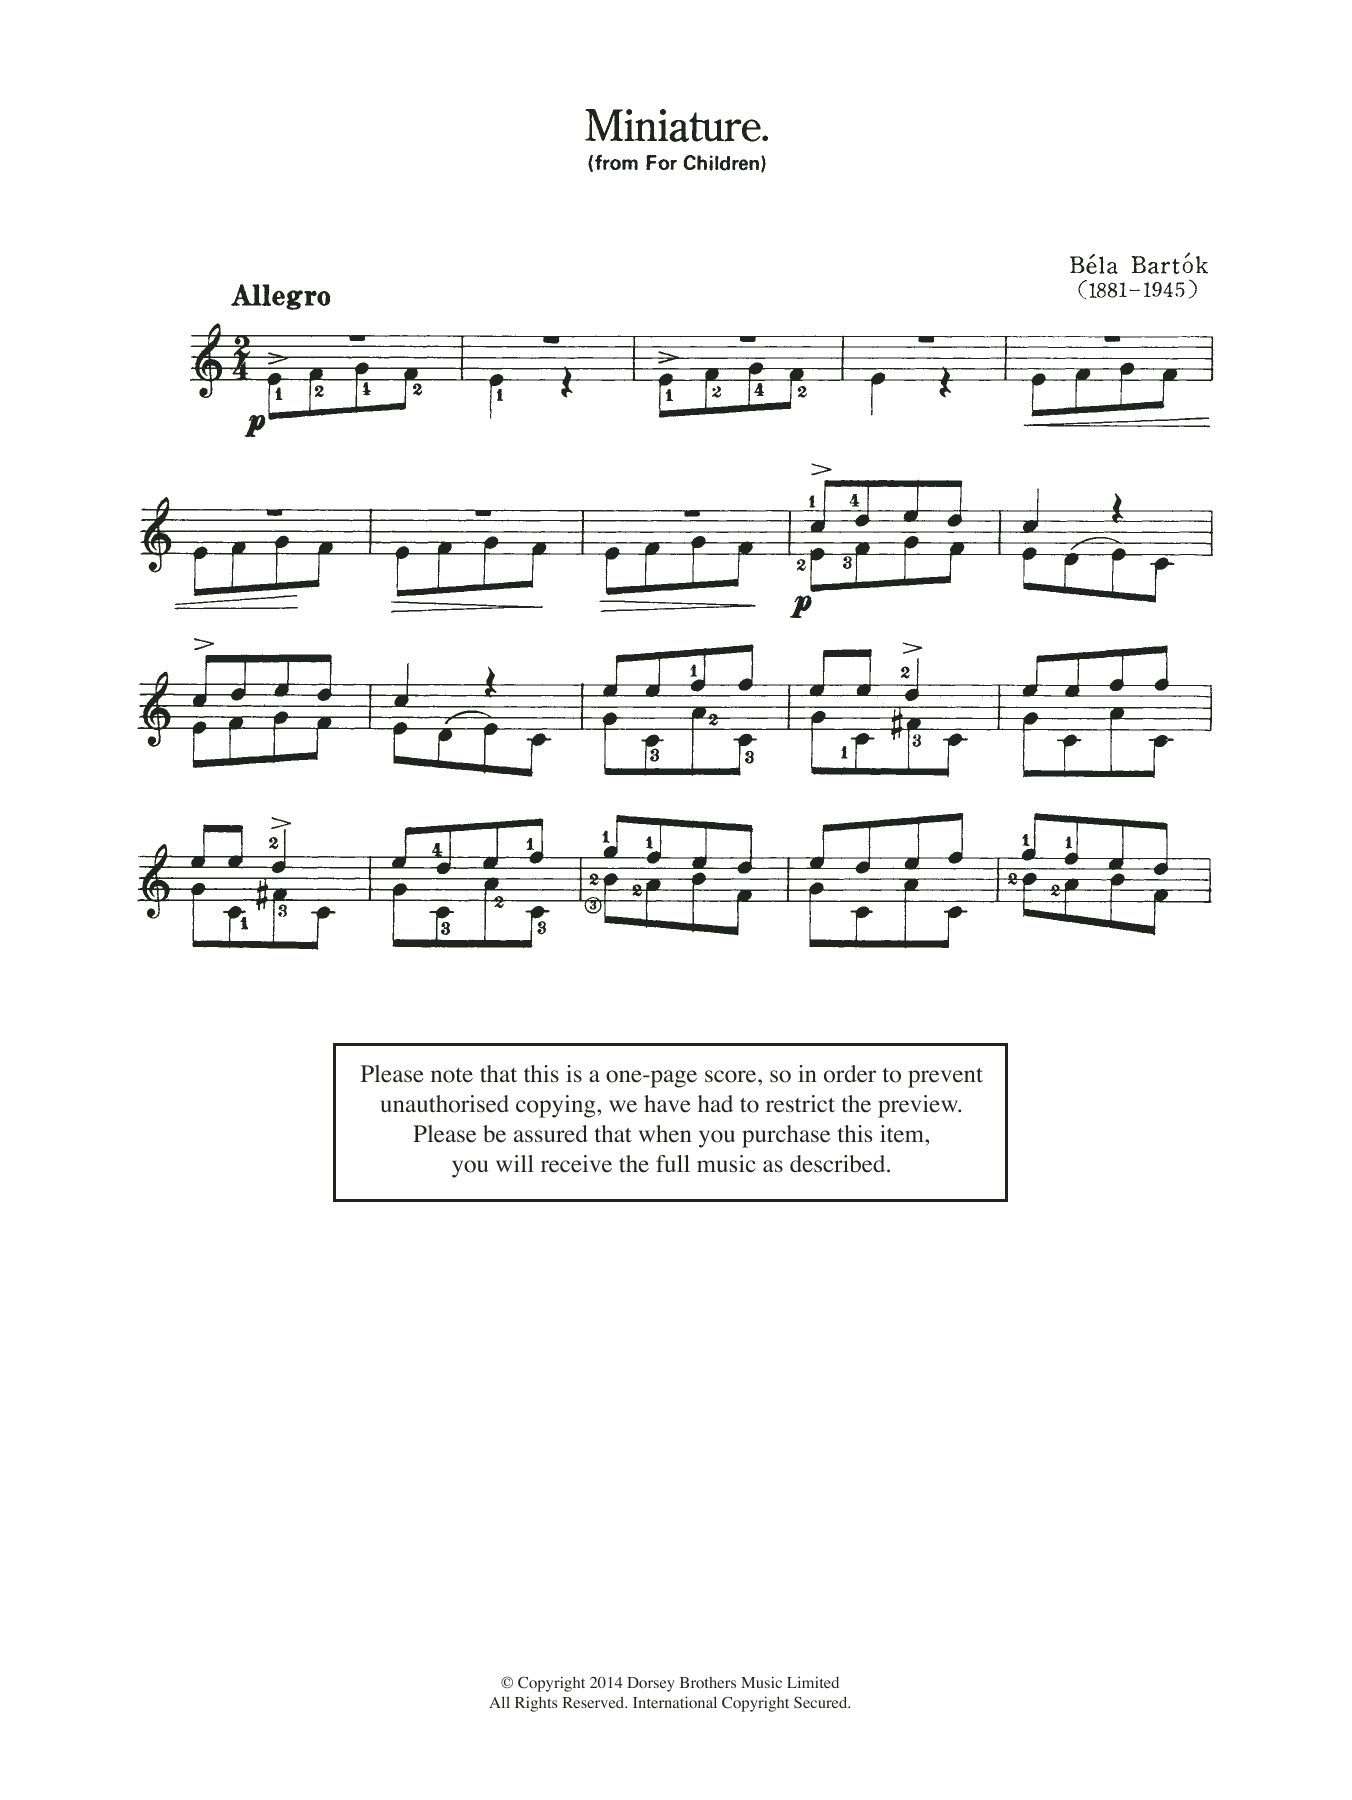 Download Bela Bartok Miniature (from 'For Children') Sheet Music